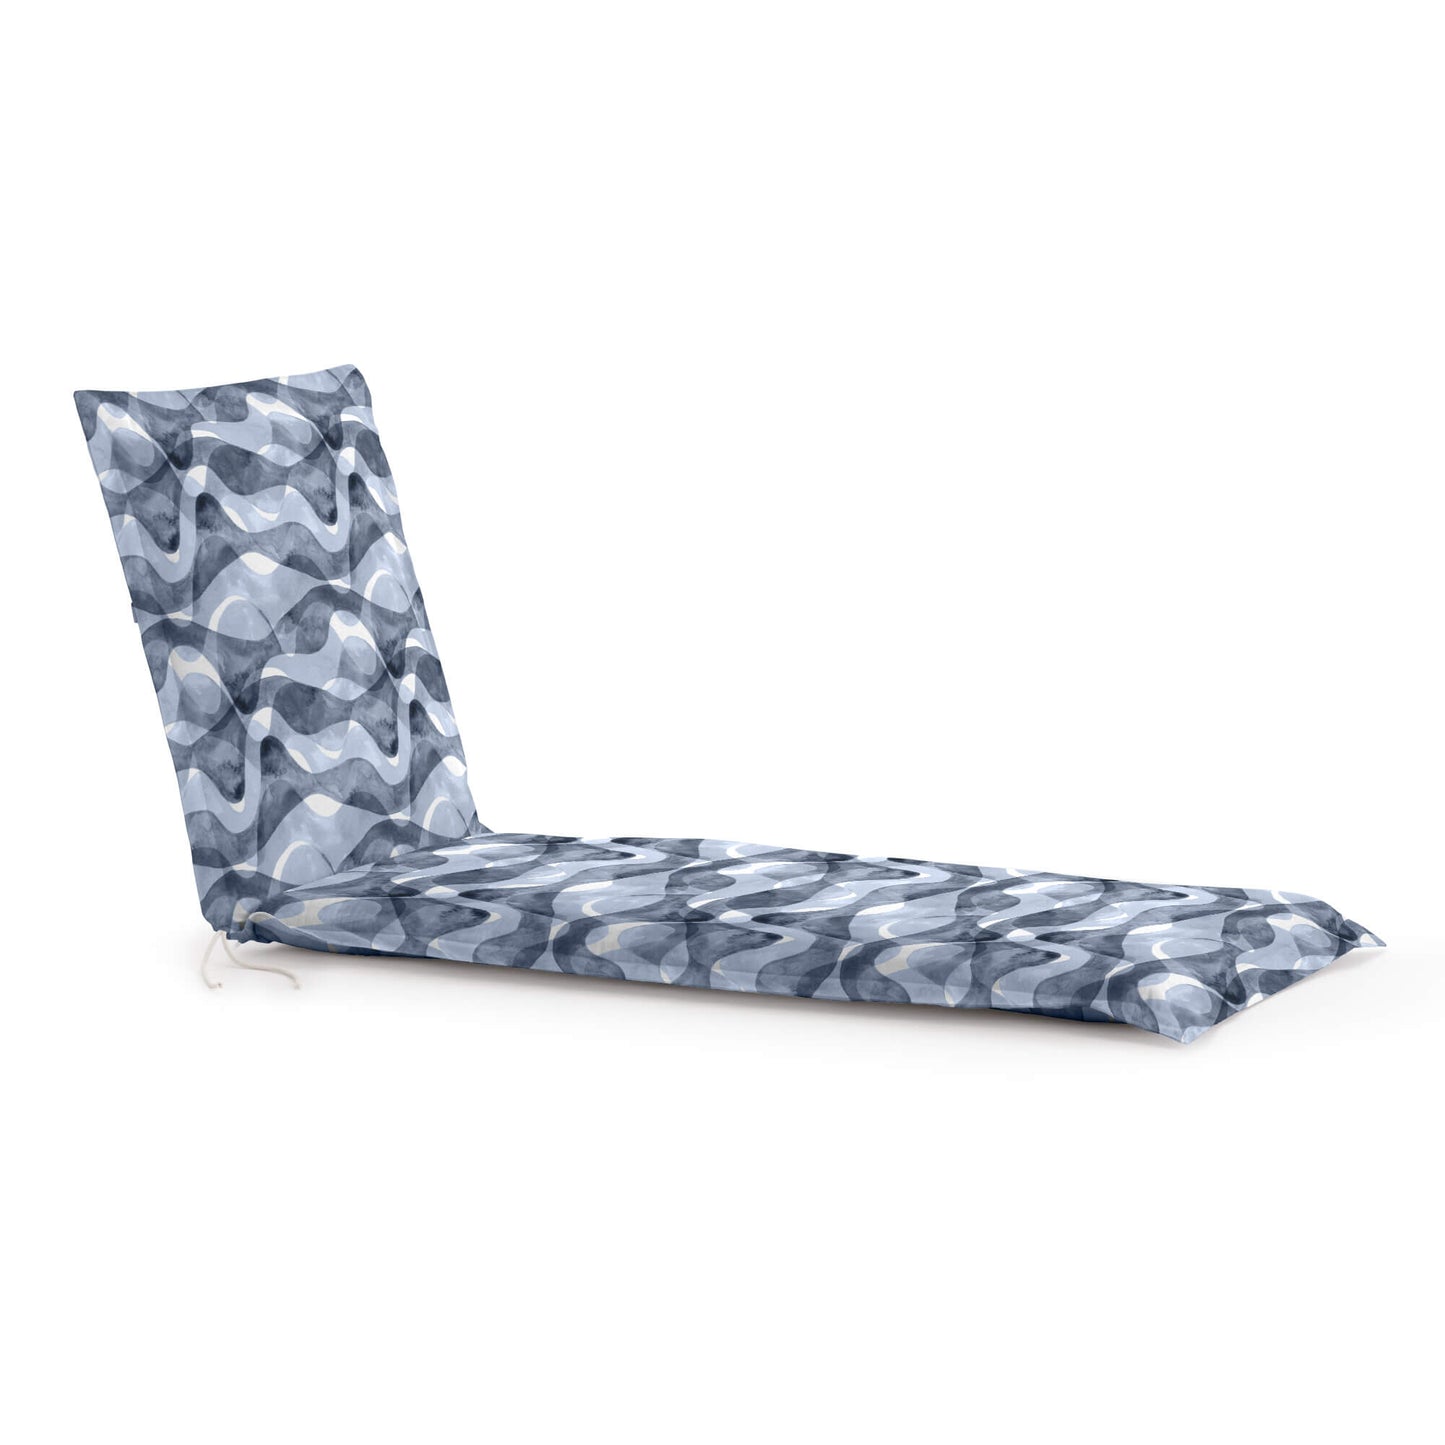 Lounger cushion 0120-414 53x175x5 cm